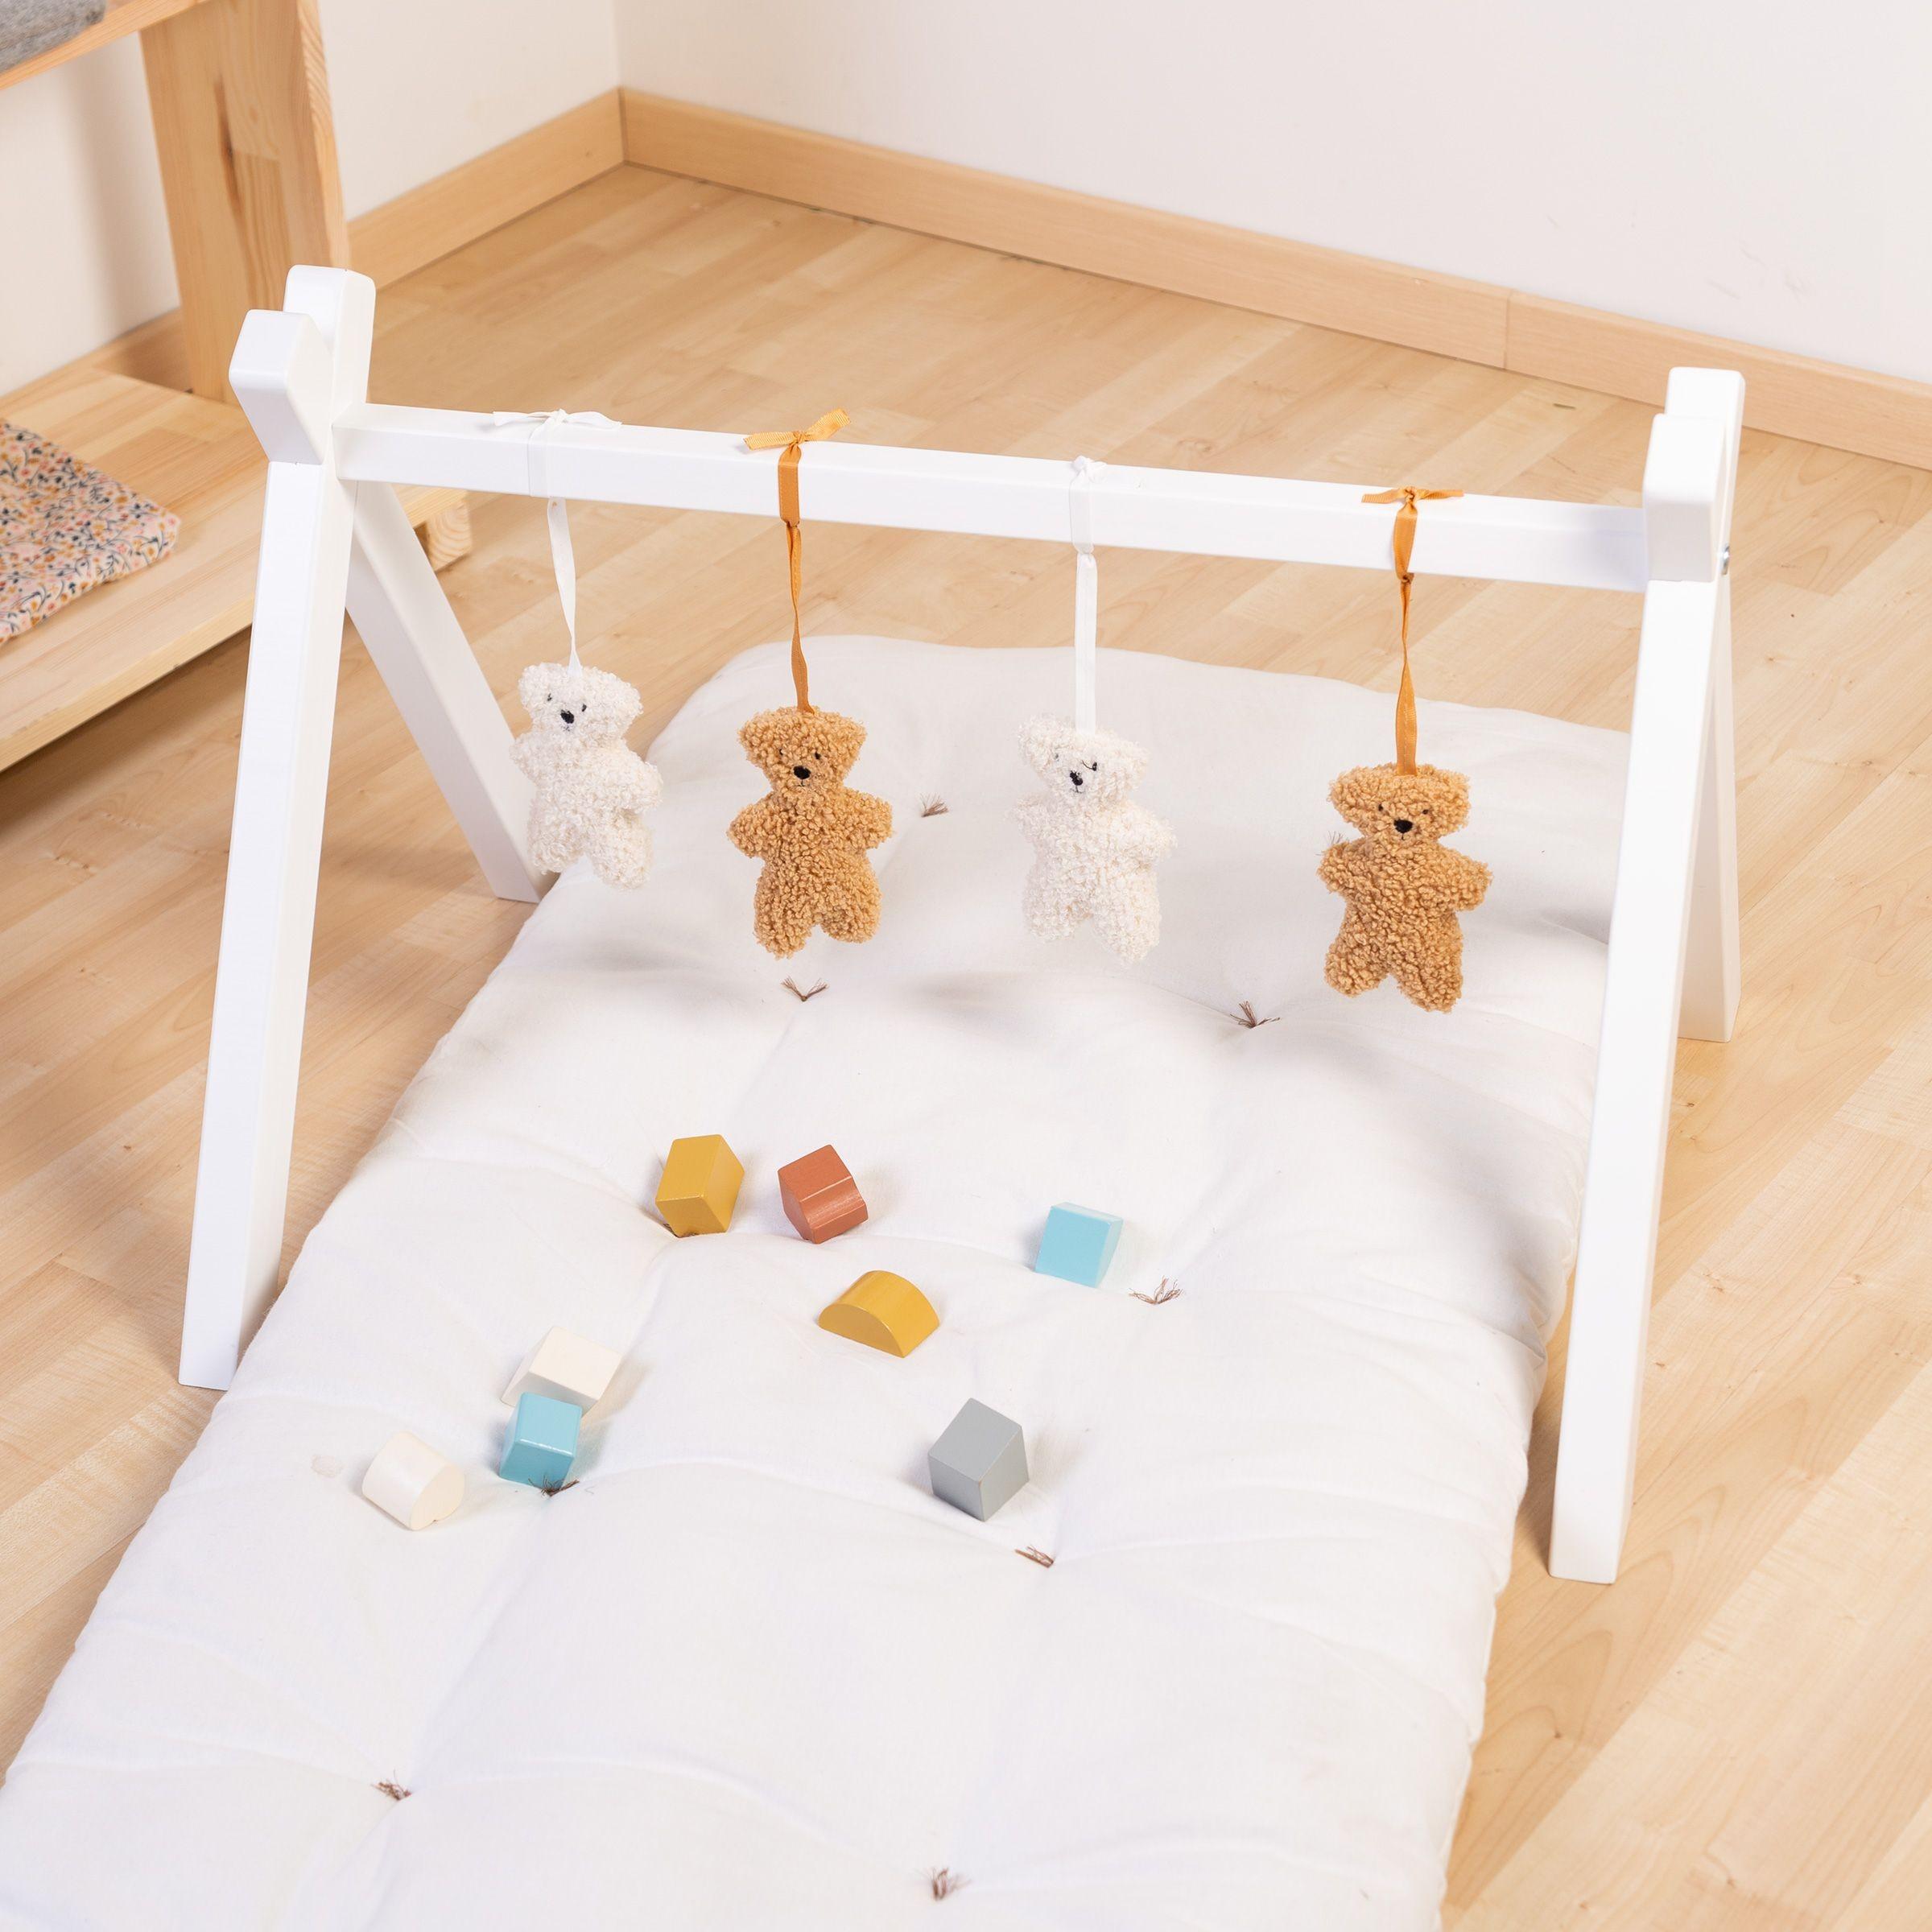 Childhome - Baby gym figuurtjes teddy set van 4